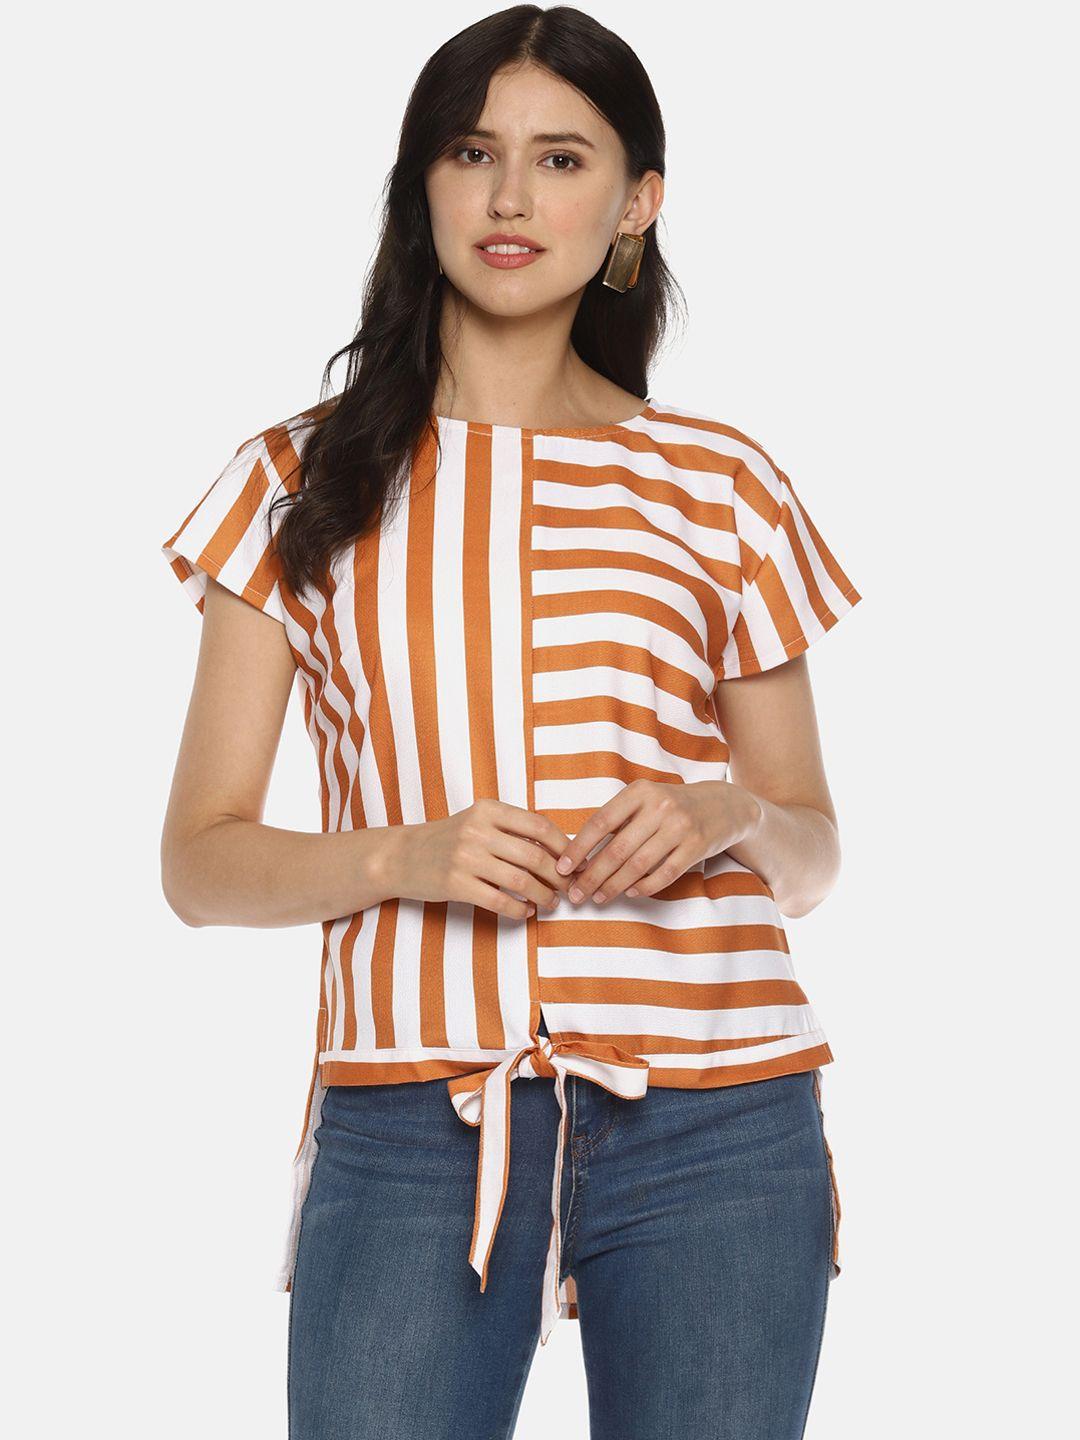 sahora women white & orange striped regular top